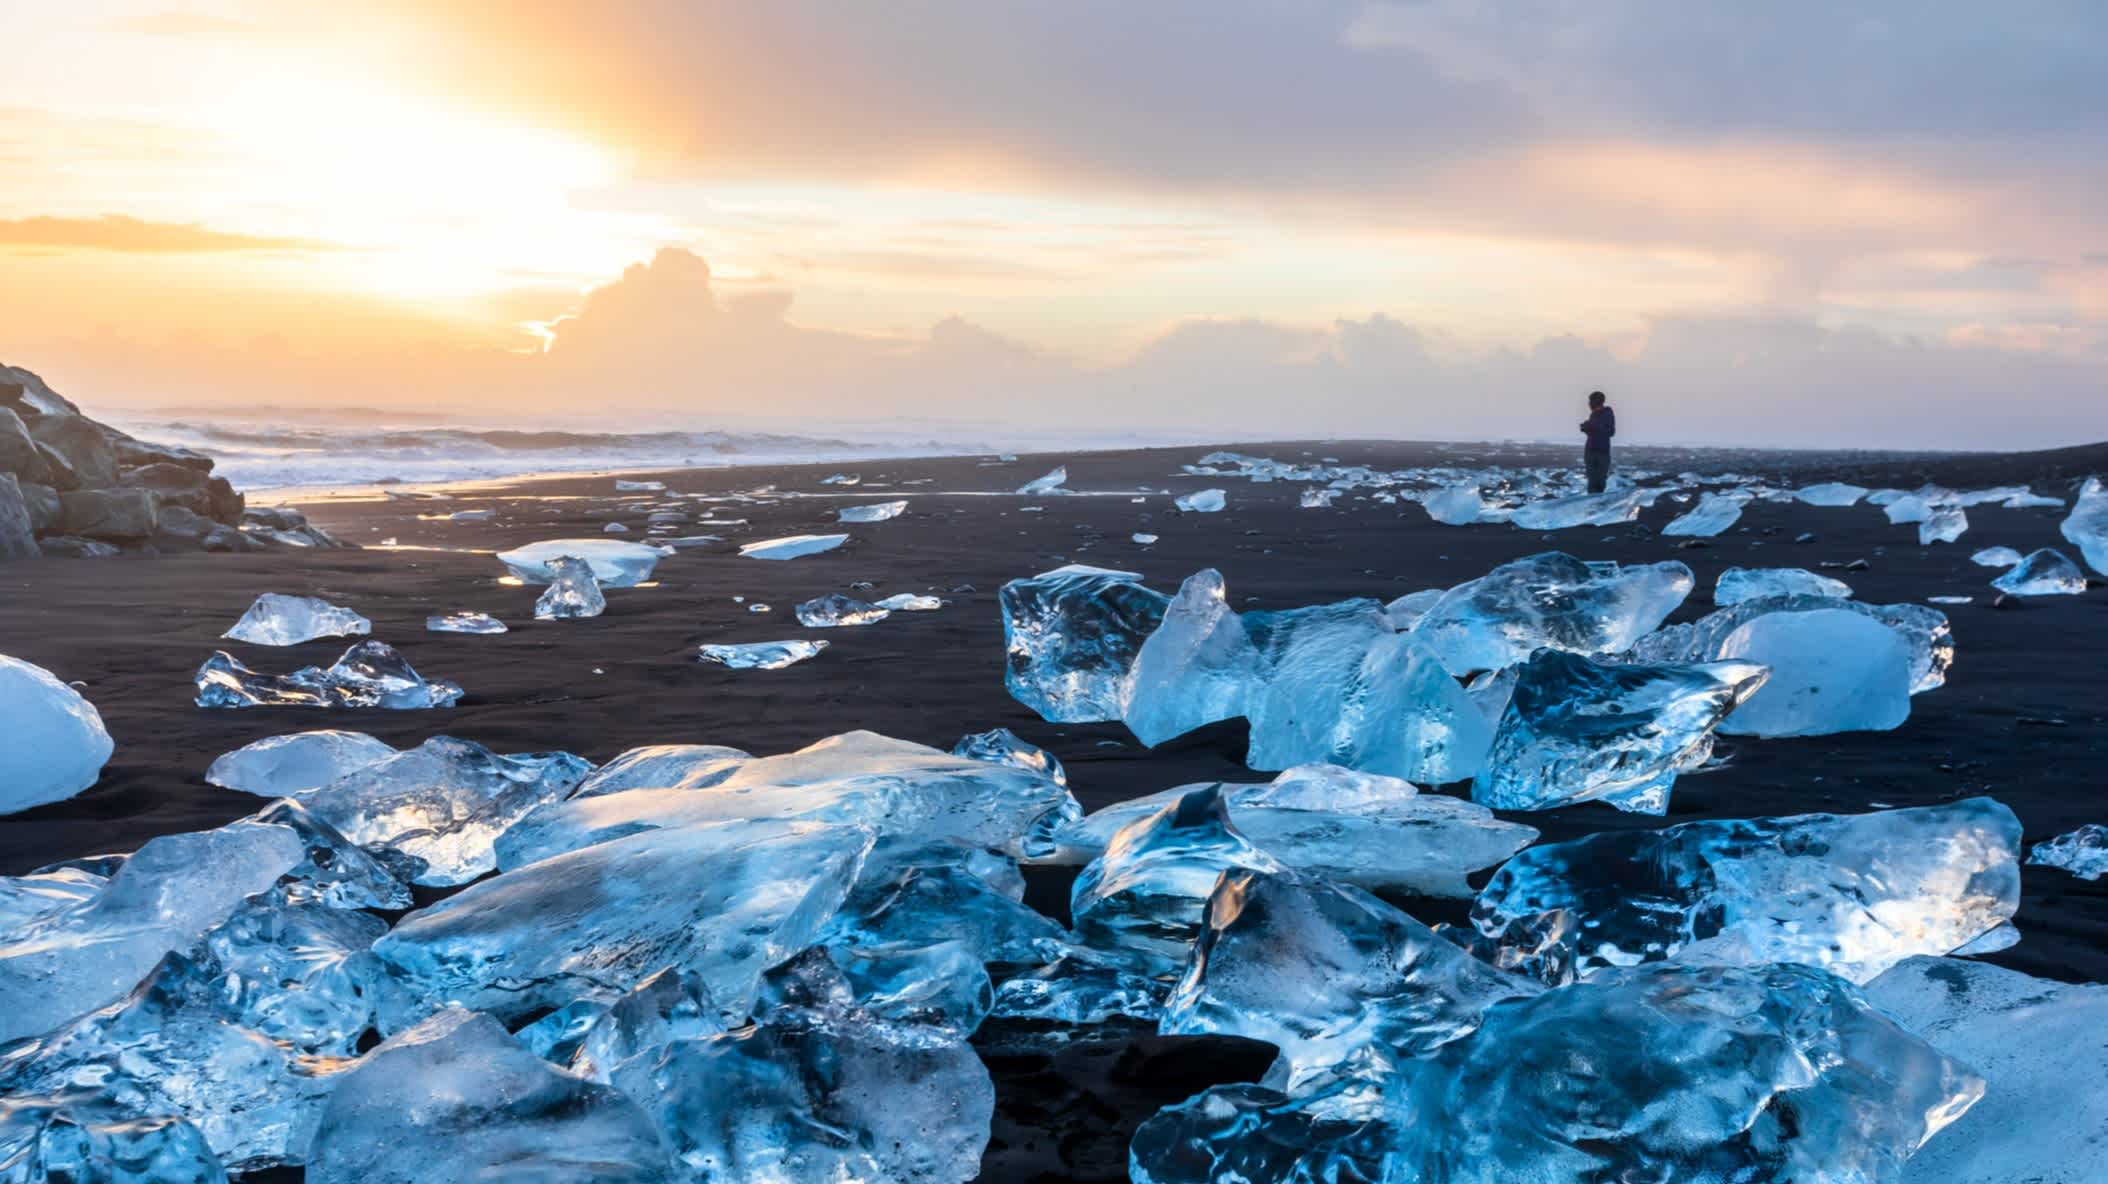 Diamond Beach in Jokulsarlon, Island, mit blauen Eisbergen, die auf dem schwarzen Sand schmelzen.
